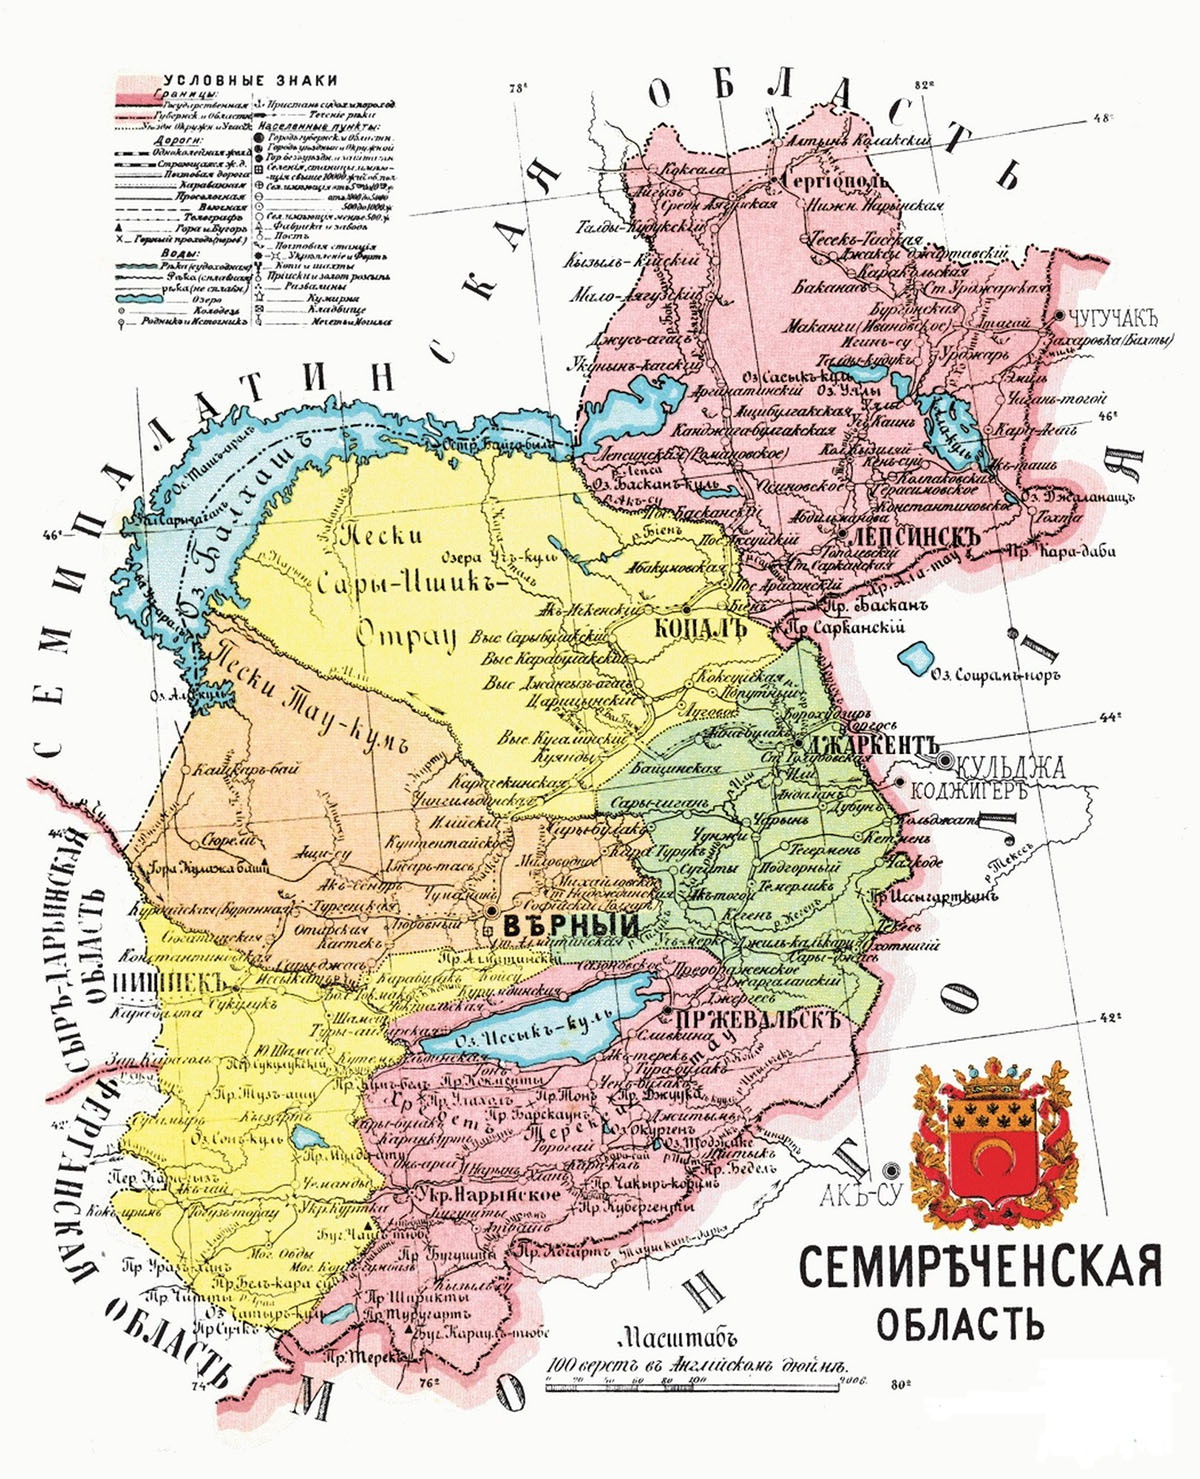 Карта Семиреченской области по состоянию на 1913 год.